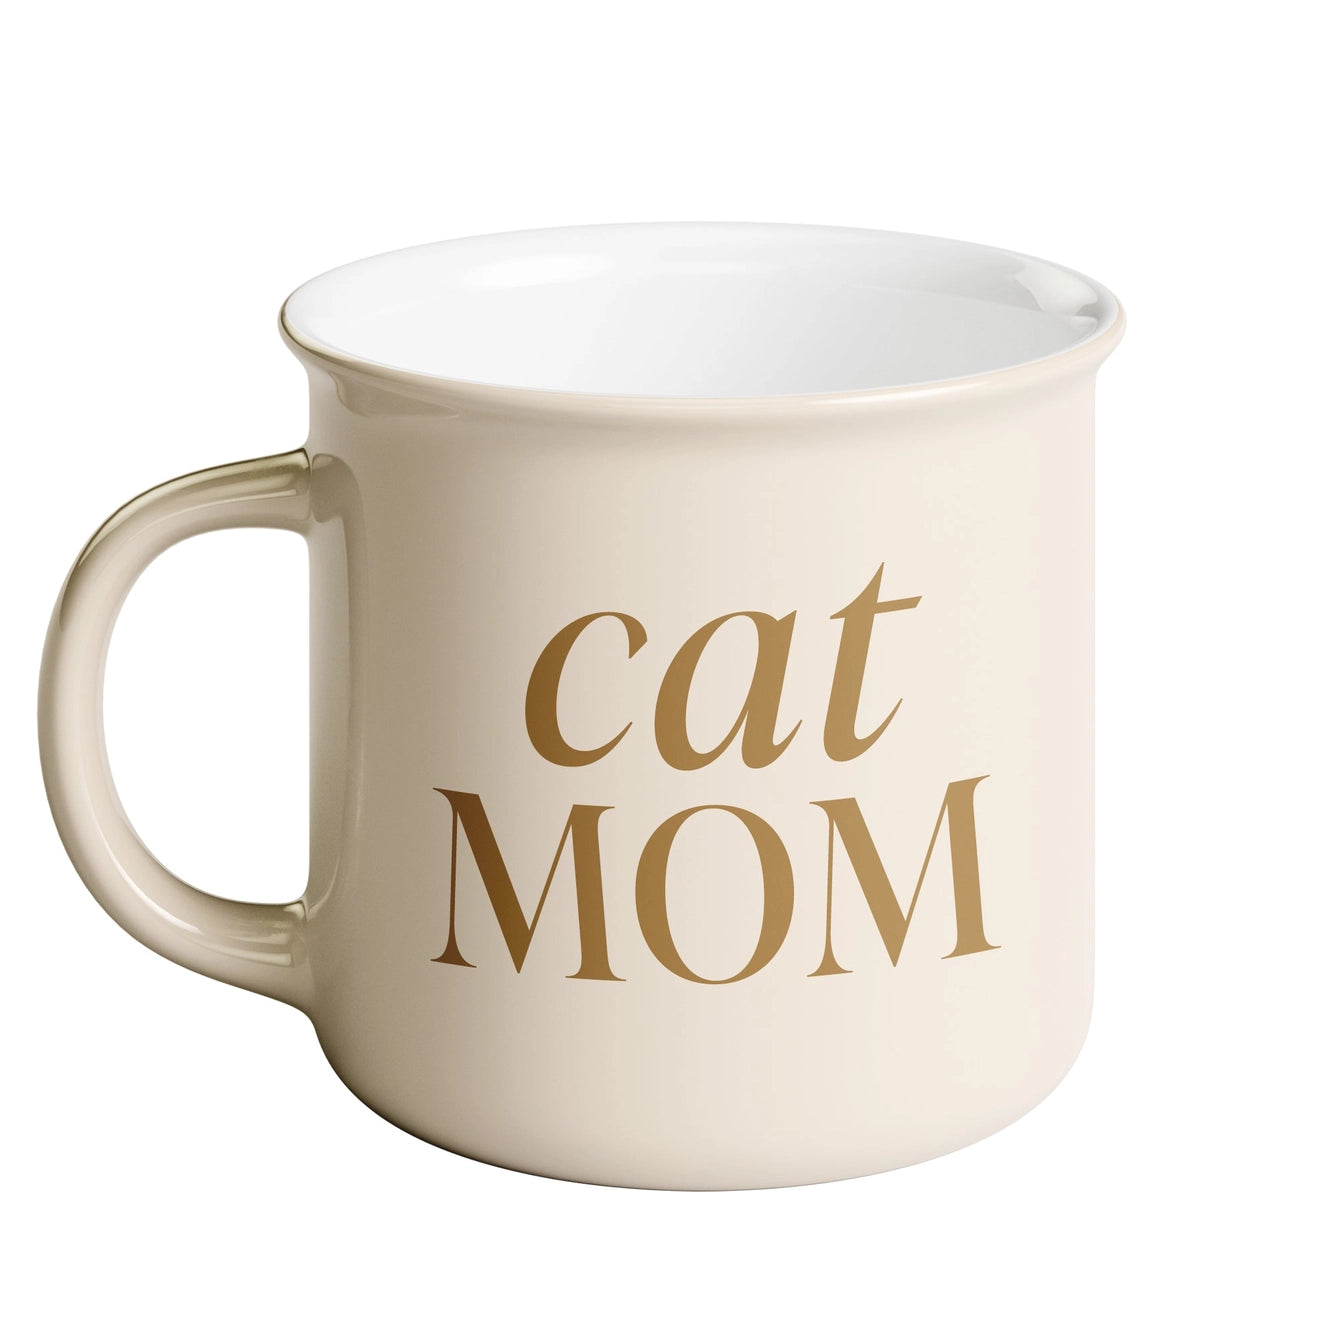 Cat Mom Campfire Coffee Mug